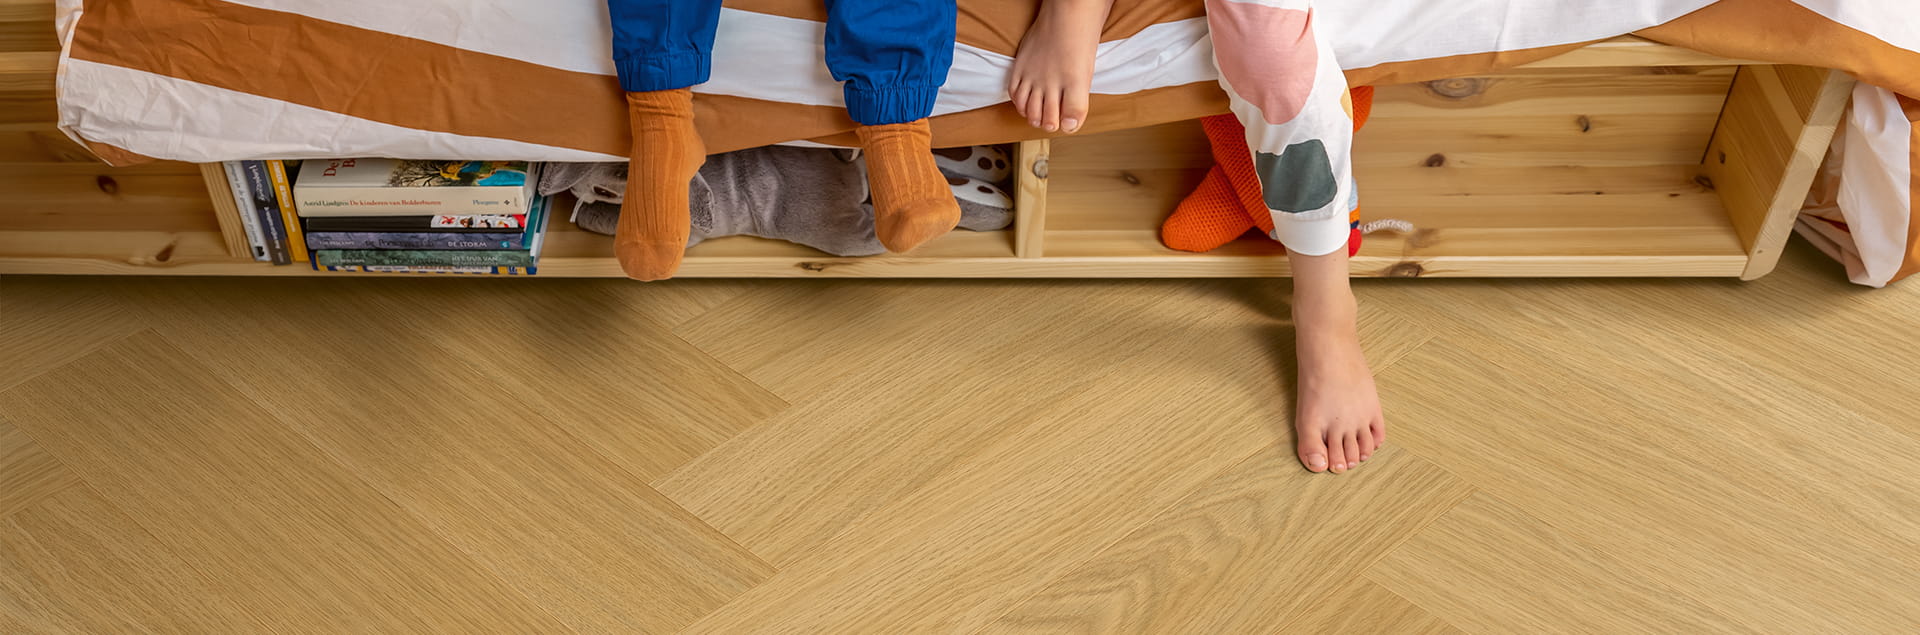 Kinderkamer met bruine visgraat vinyl vloer